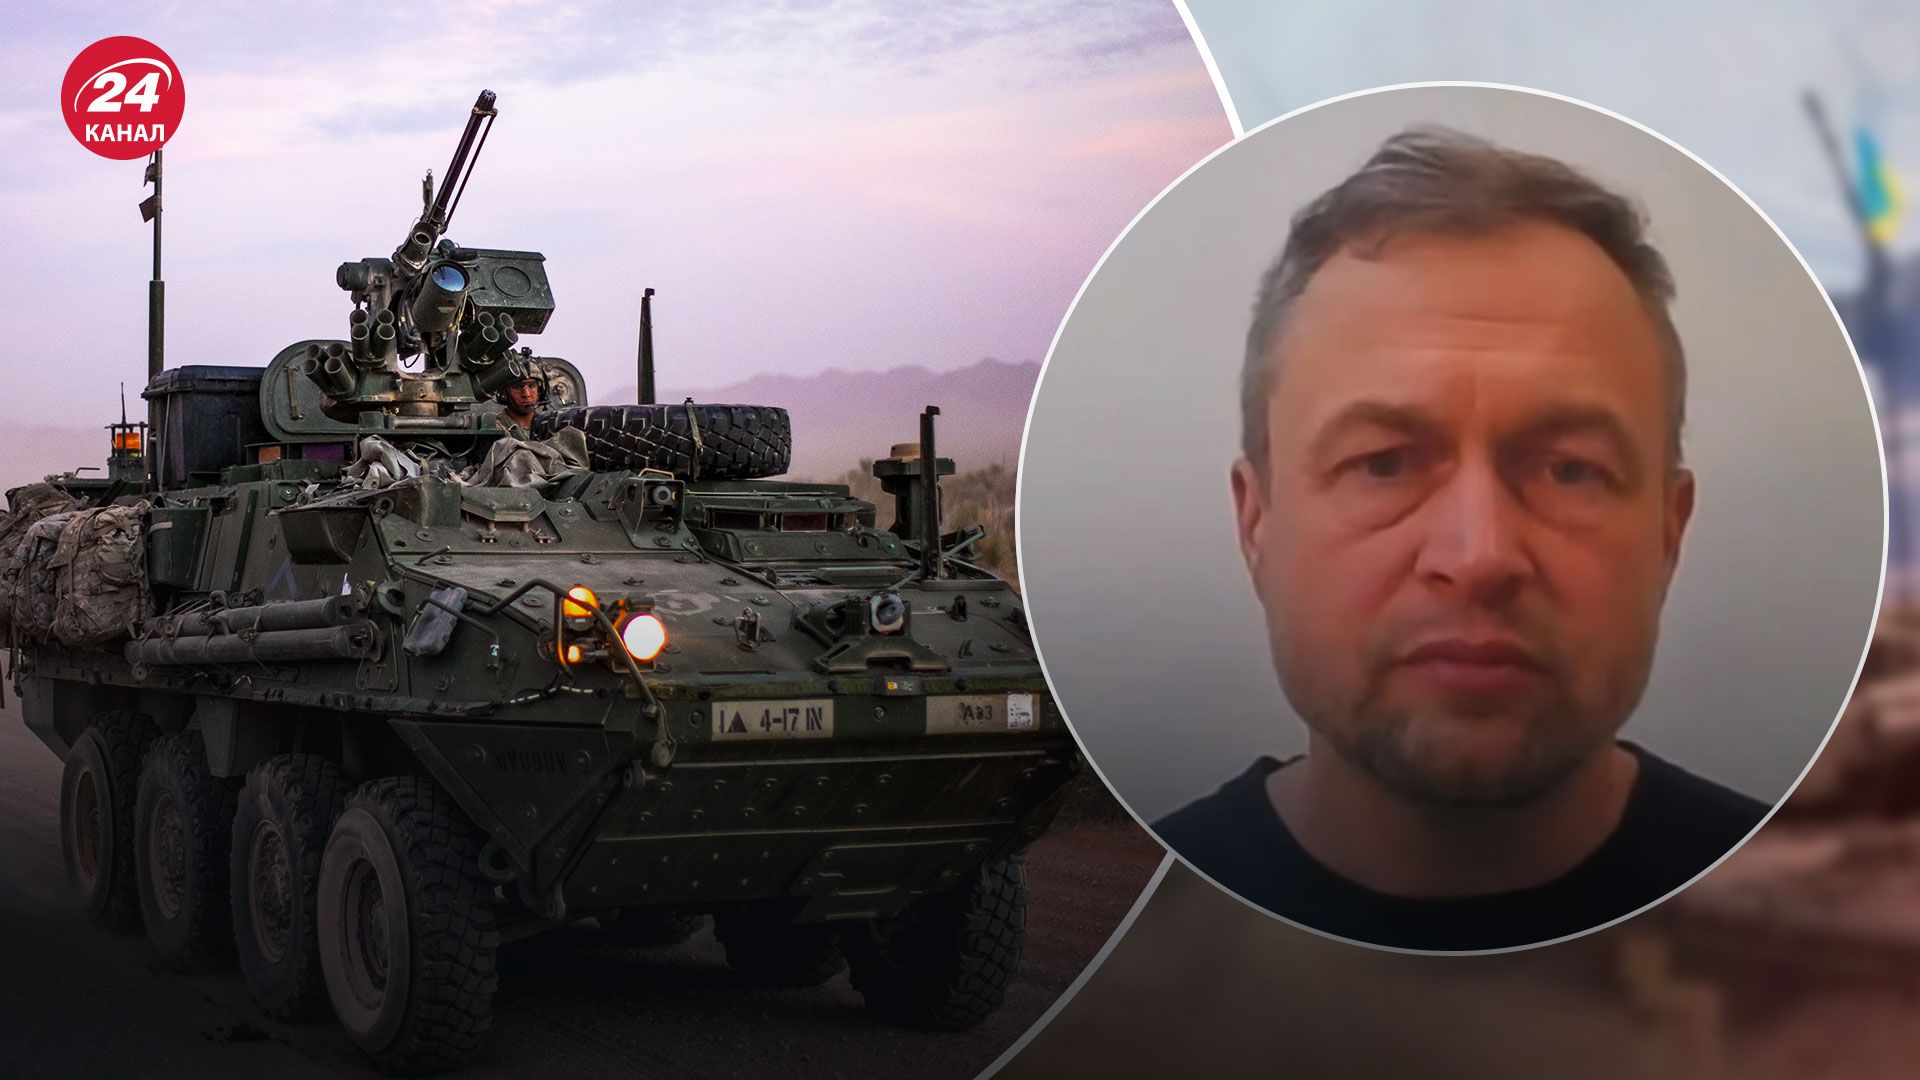 БТР Stryker для Украины – военный эксперт назвал основе преимущества - 24 Канал